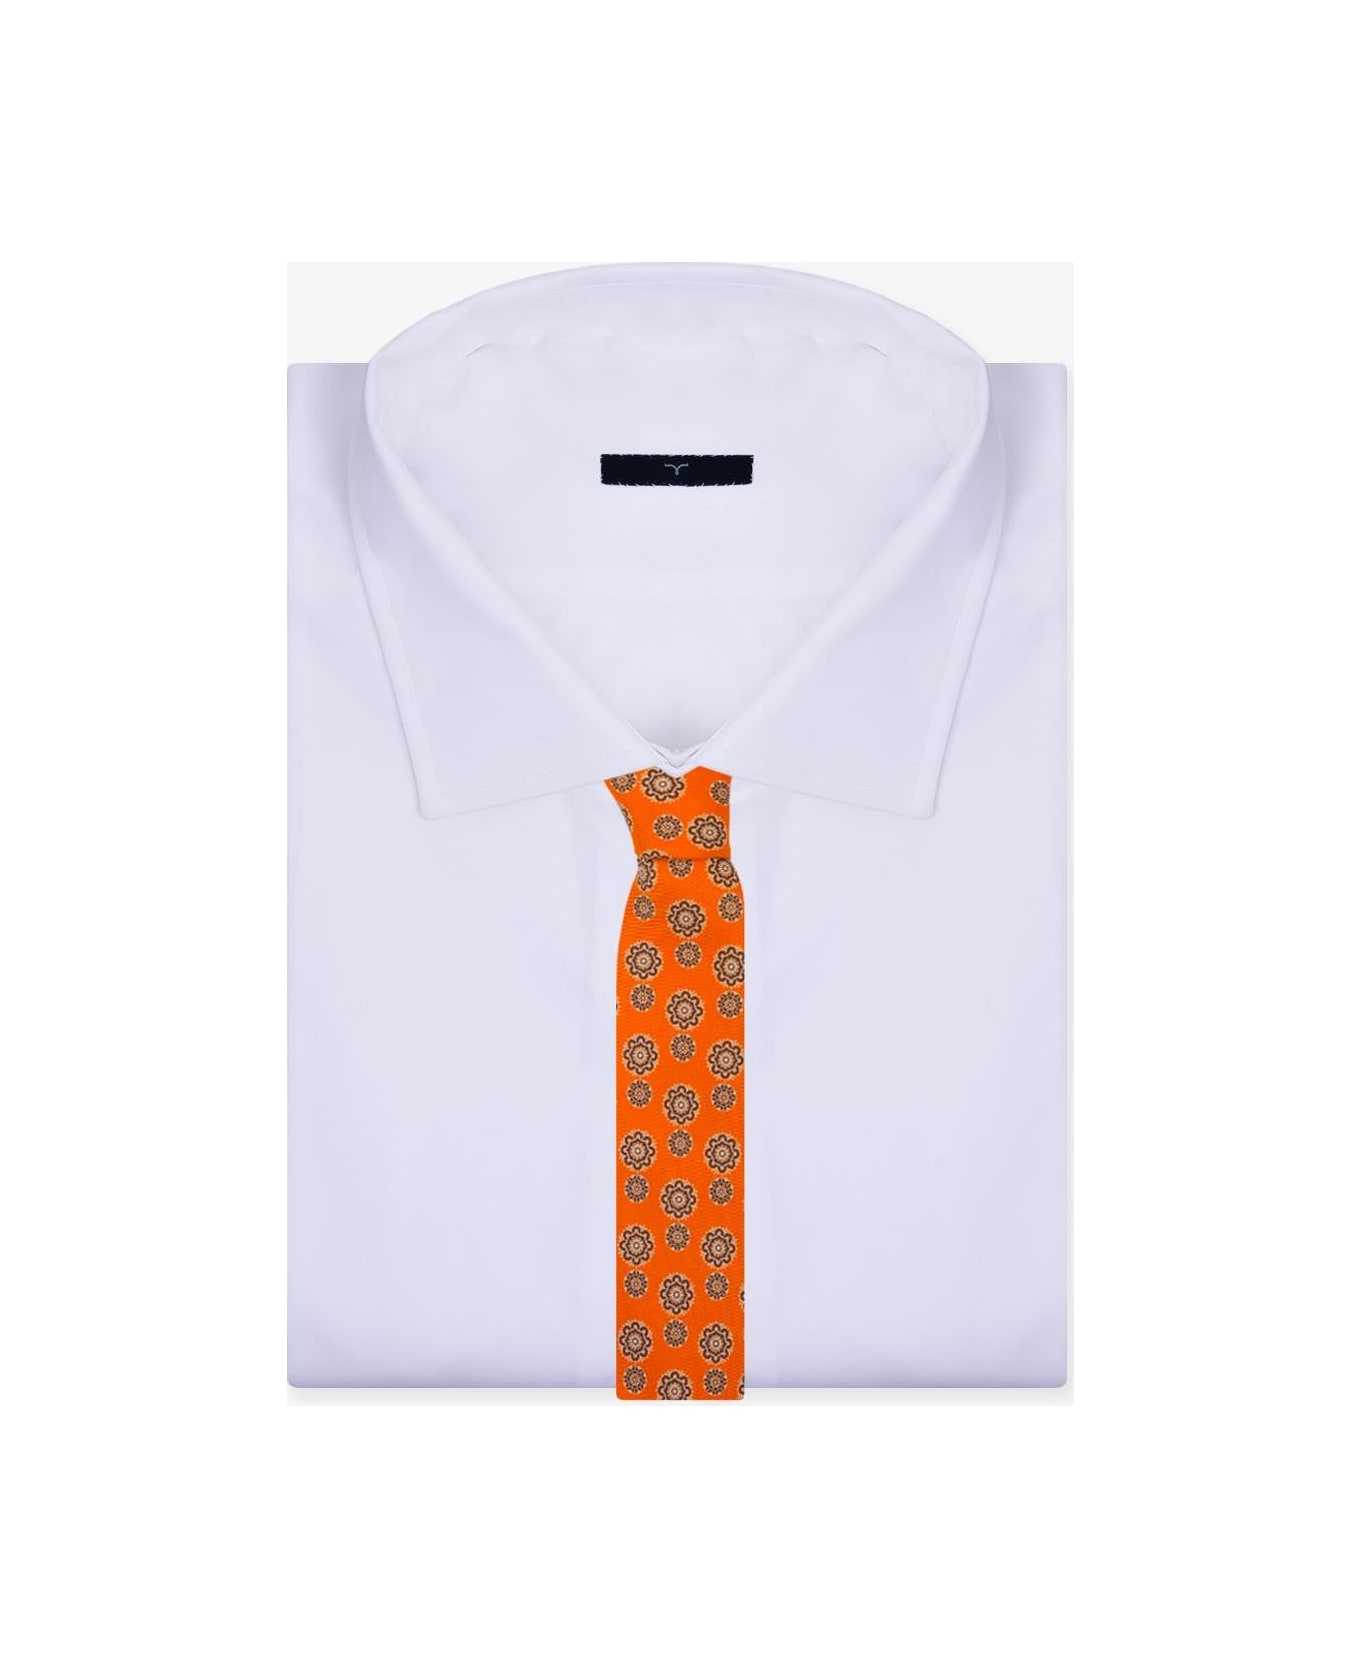 Larusmiani Tie 'arabesque' Tie - Orange